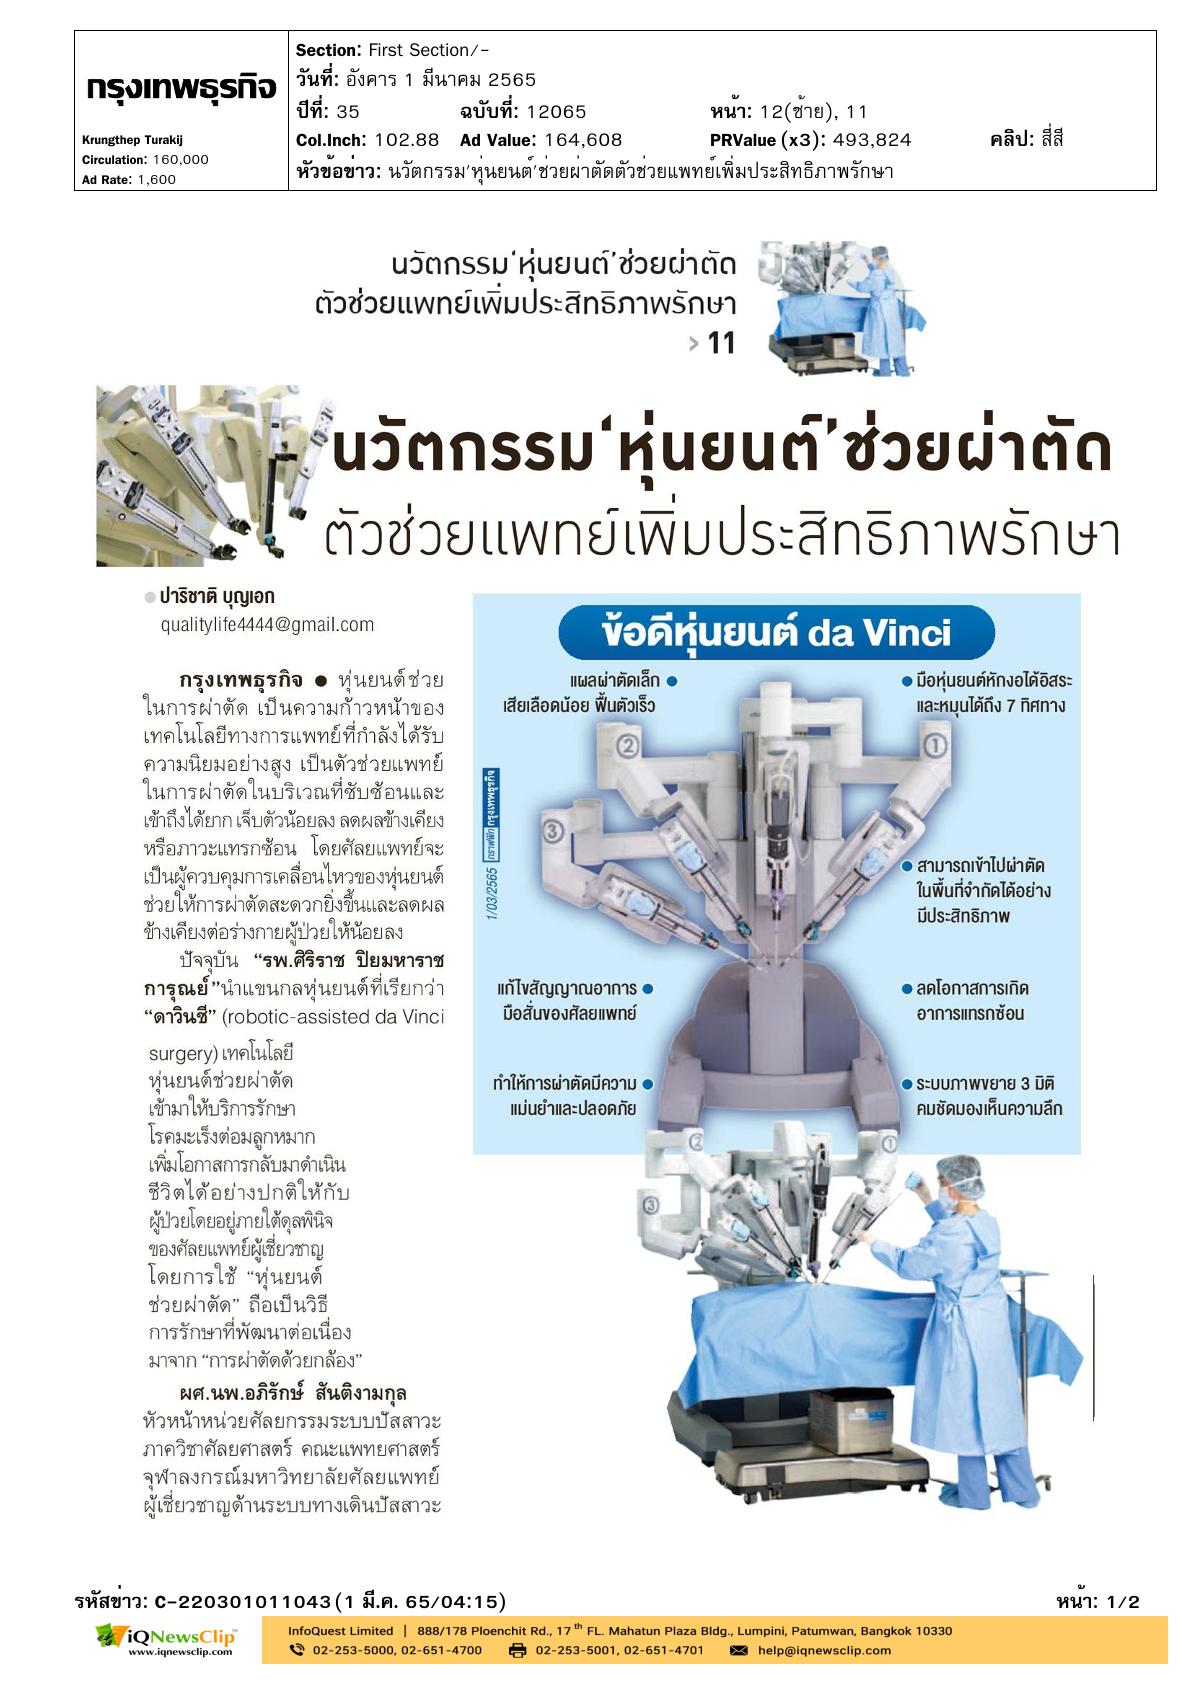 บทความเรื่อง “นวัตกรรมหุ่นยนต์ช่วยผ่าตัด ตัวช่วยแพทย์เพิ่มประสิทธิภาพรักษา”